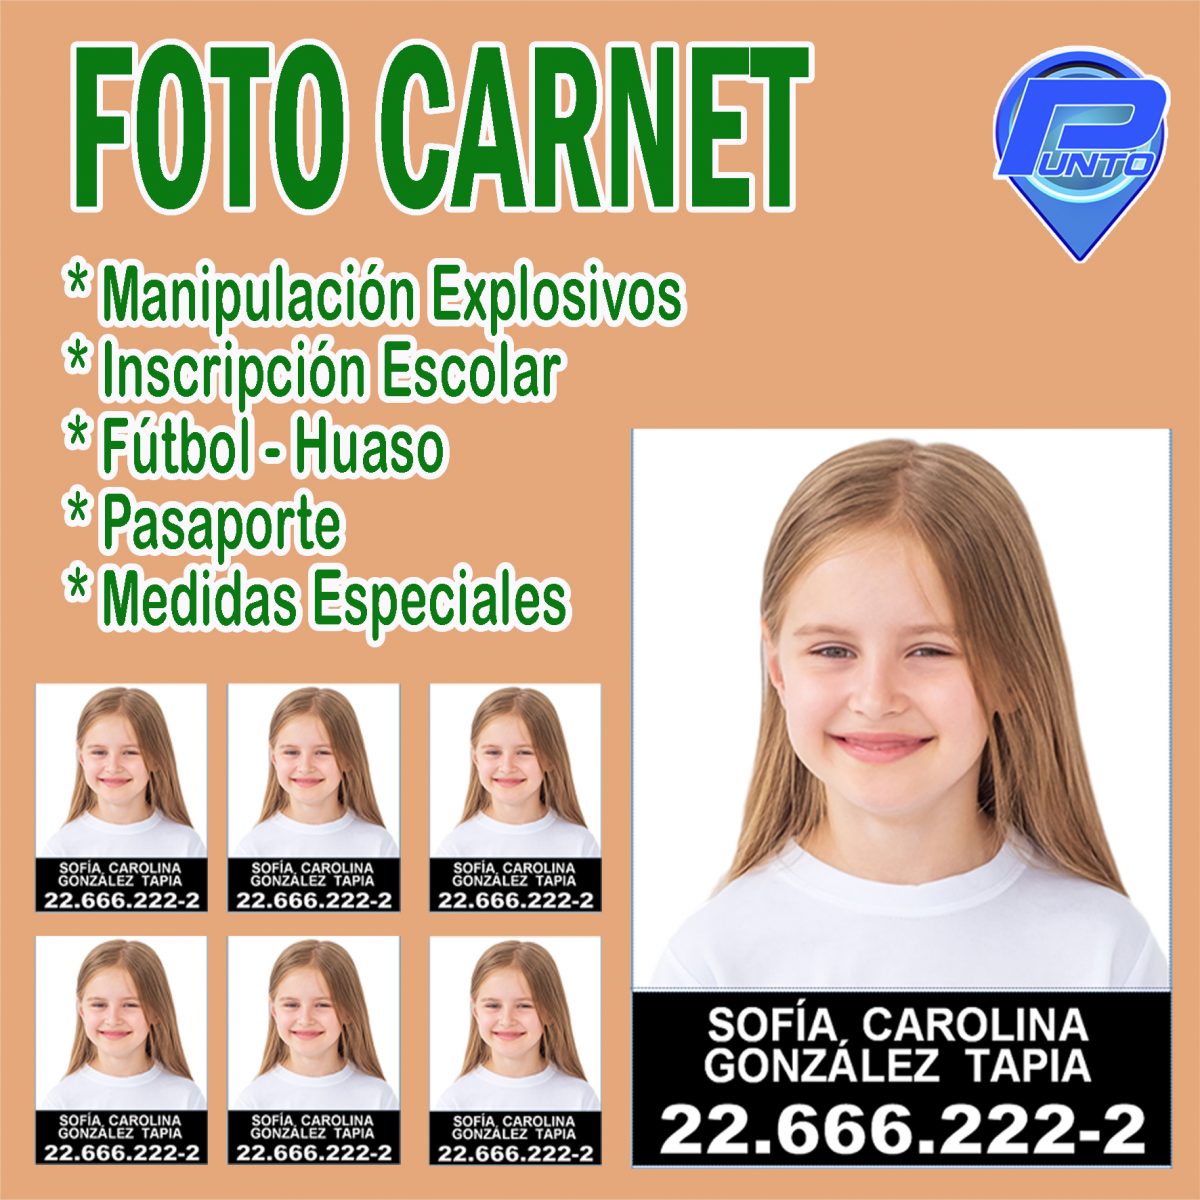 Foto Carnet Bienvenidos A Punto Servicios Tu Solución 5323